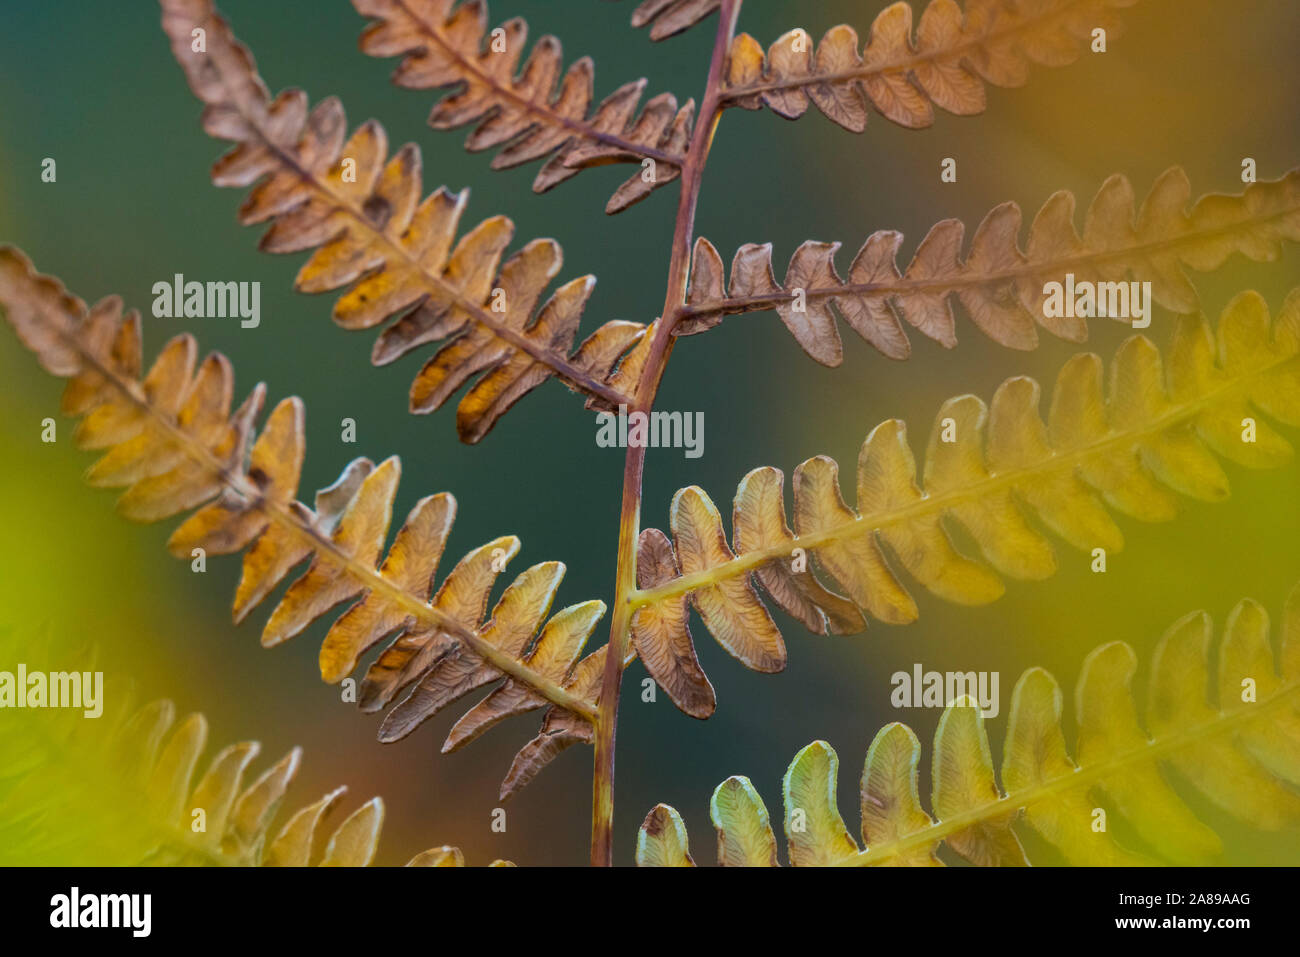 Gorgeous ferns in autumn season Stock Photo - Alamy